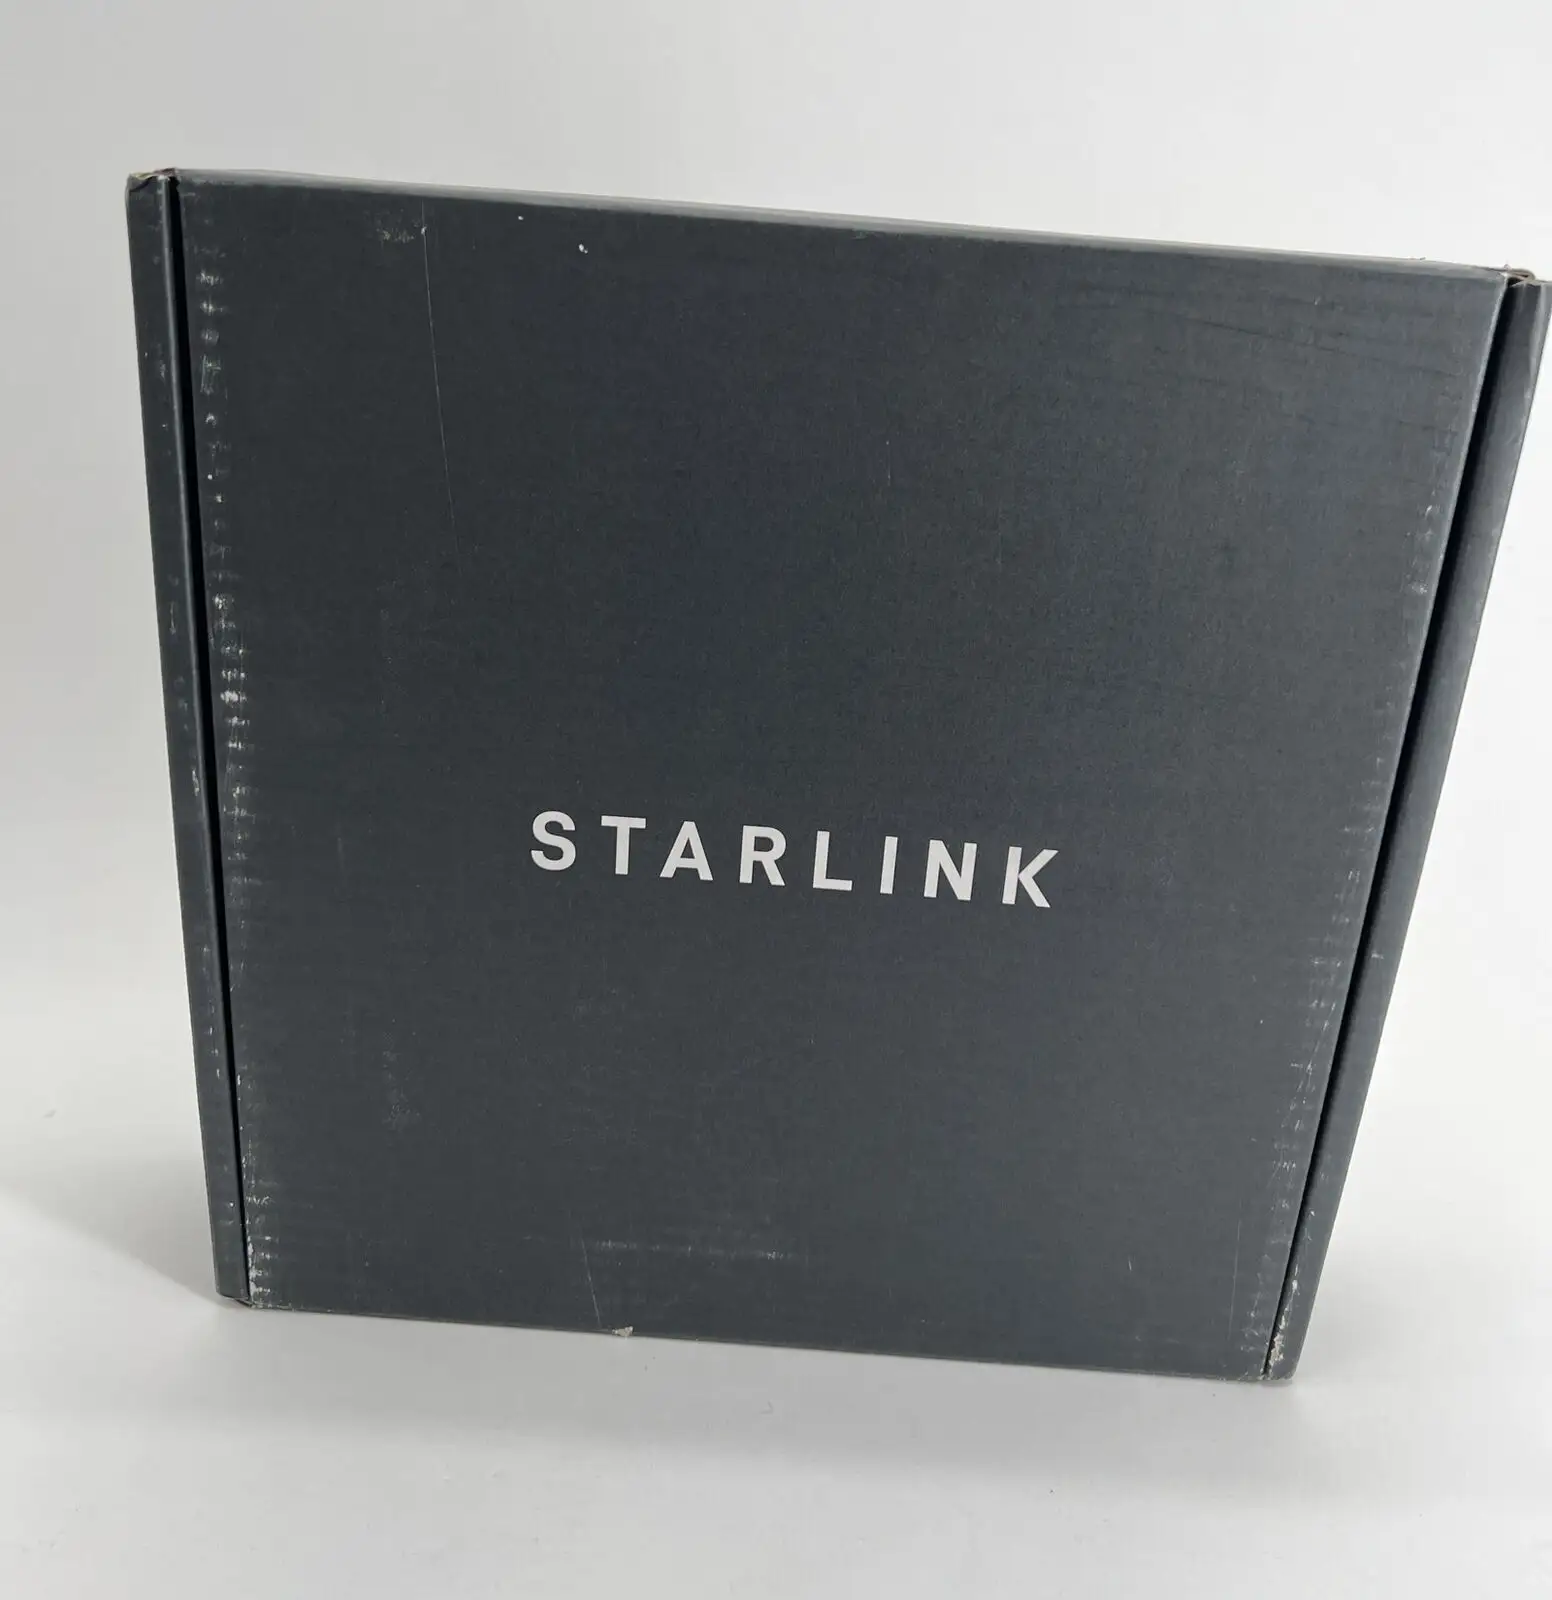 품질 새로운 % % Sta_rlink 인터넷 위성 접시 키트 v2 RVs 버전 (ROAM) Starlink 2 세대